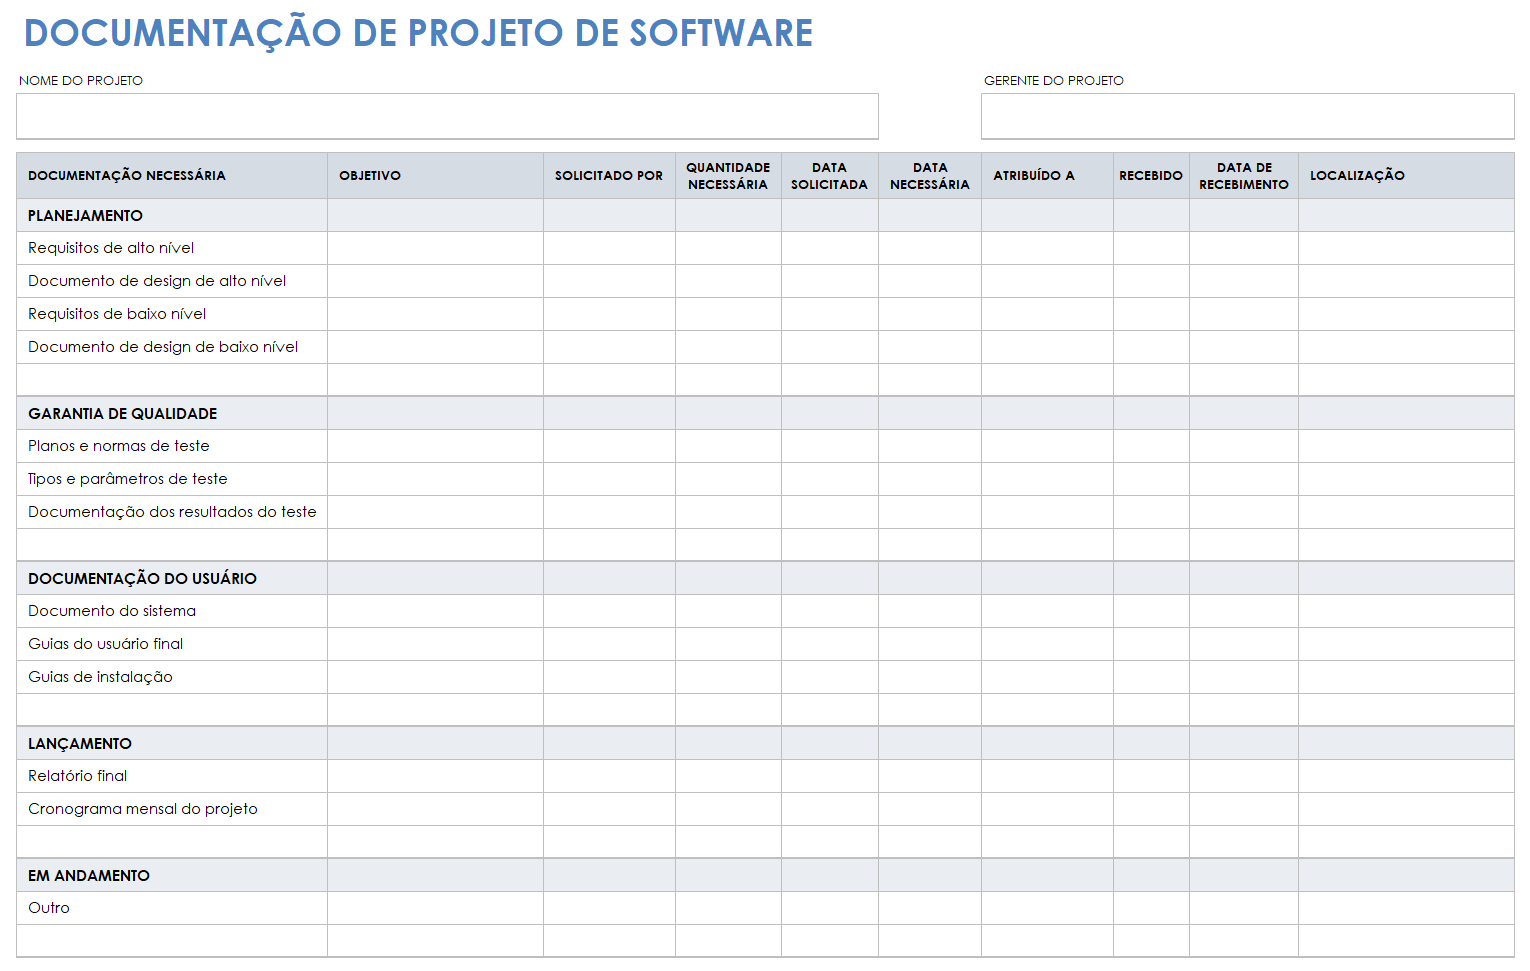  modelo de documentação de projeto de software